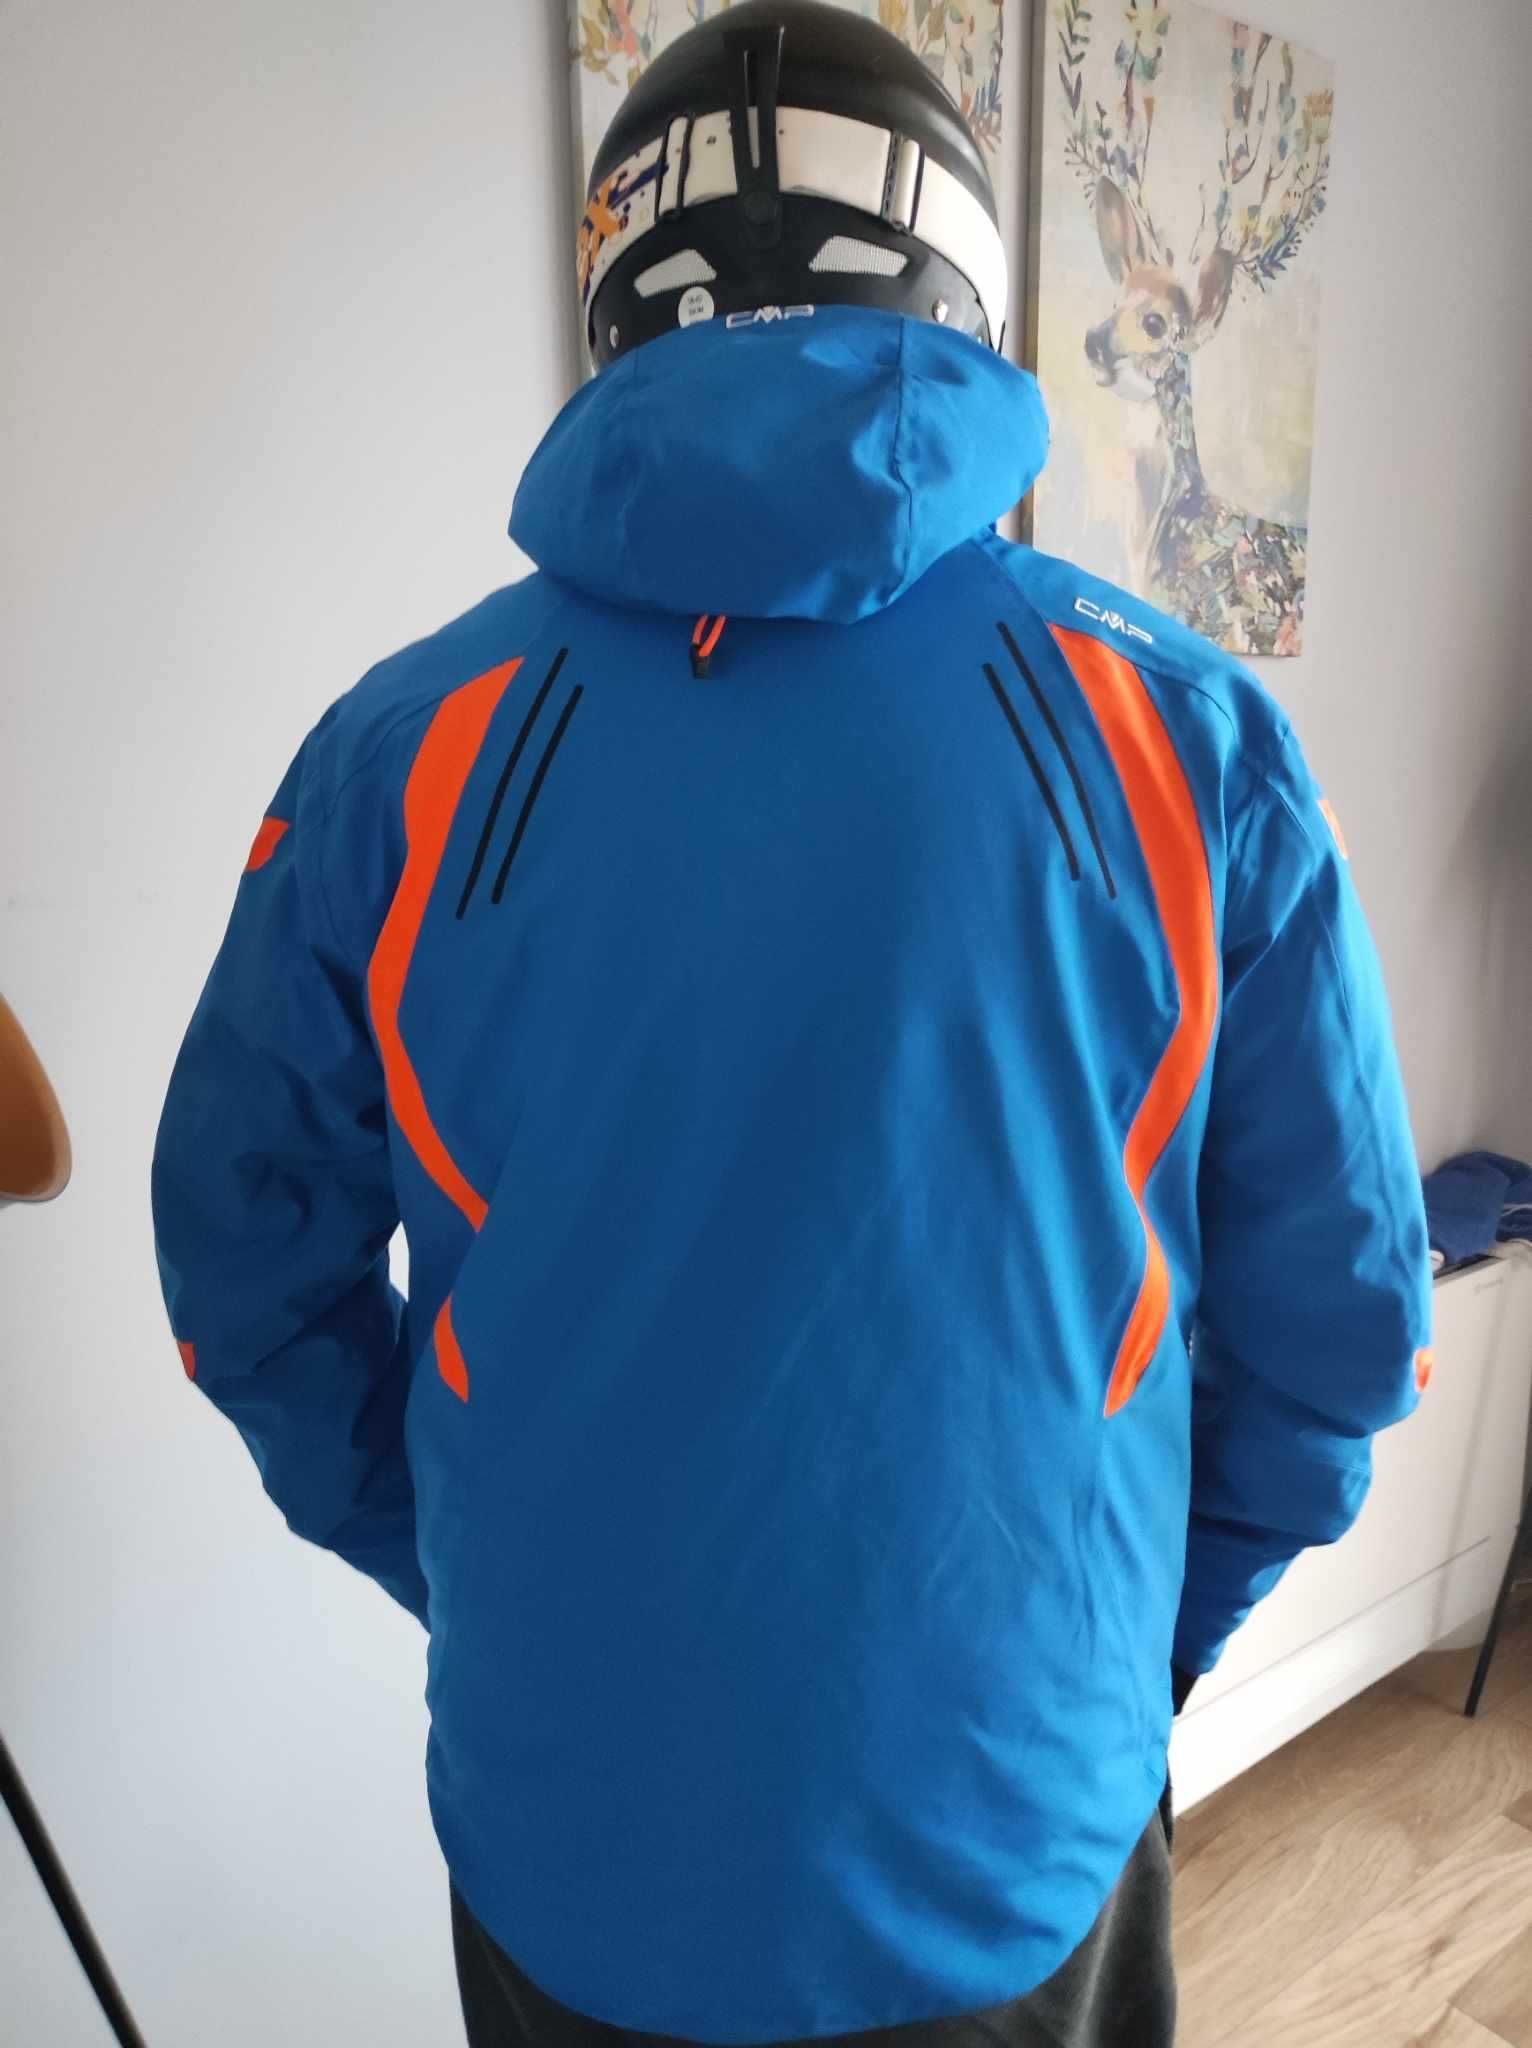 Мъжко яке за ски CMP. Като ново, почти неизползвано.